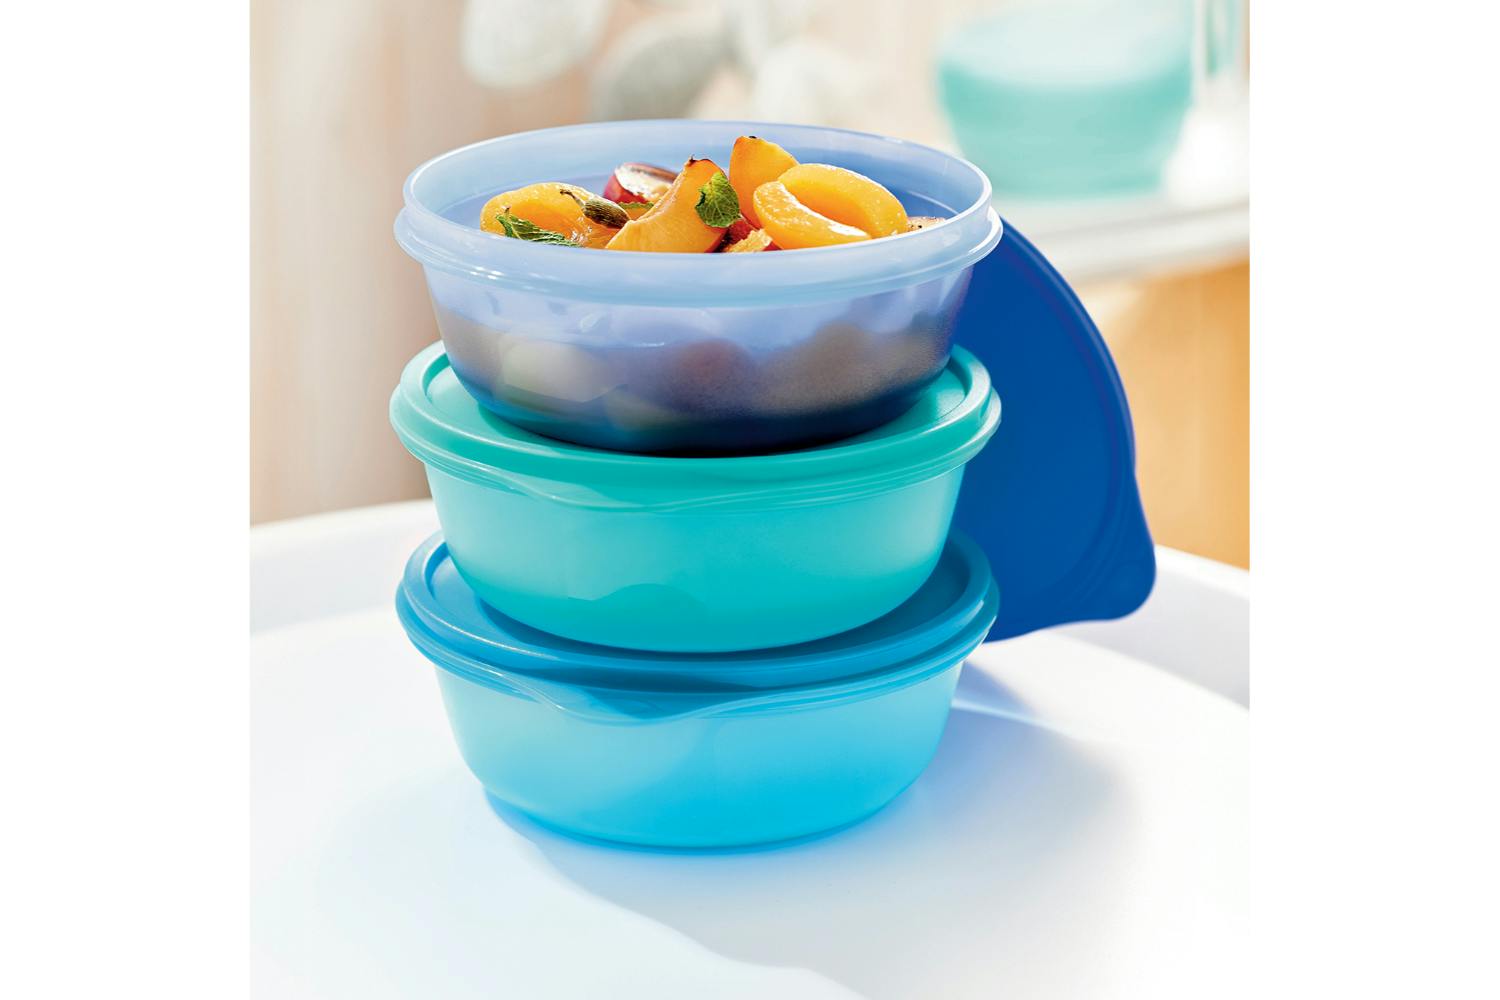 Tupperware Essentials Seal & Go Medium Bowl Set | 3 Pieces